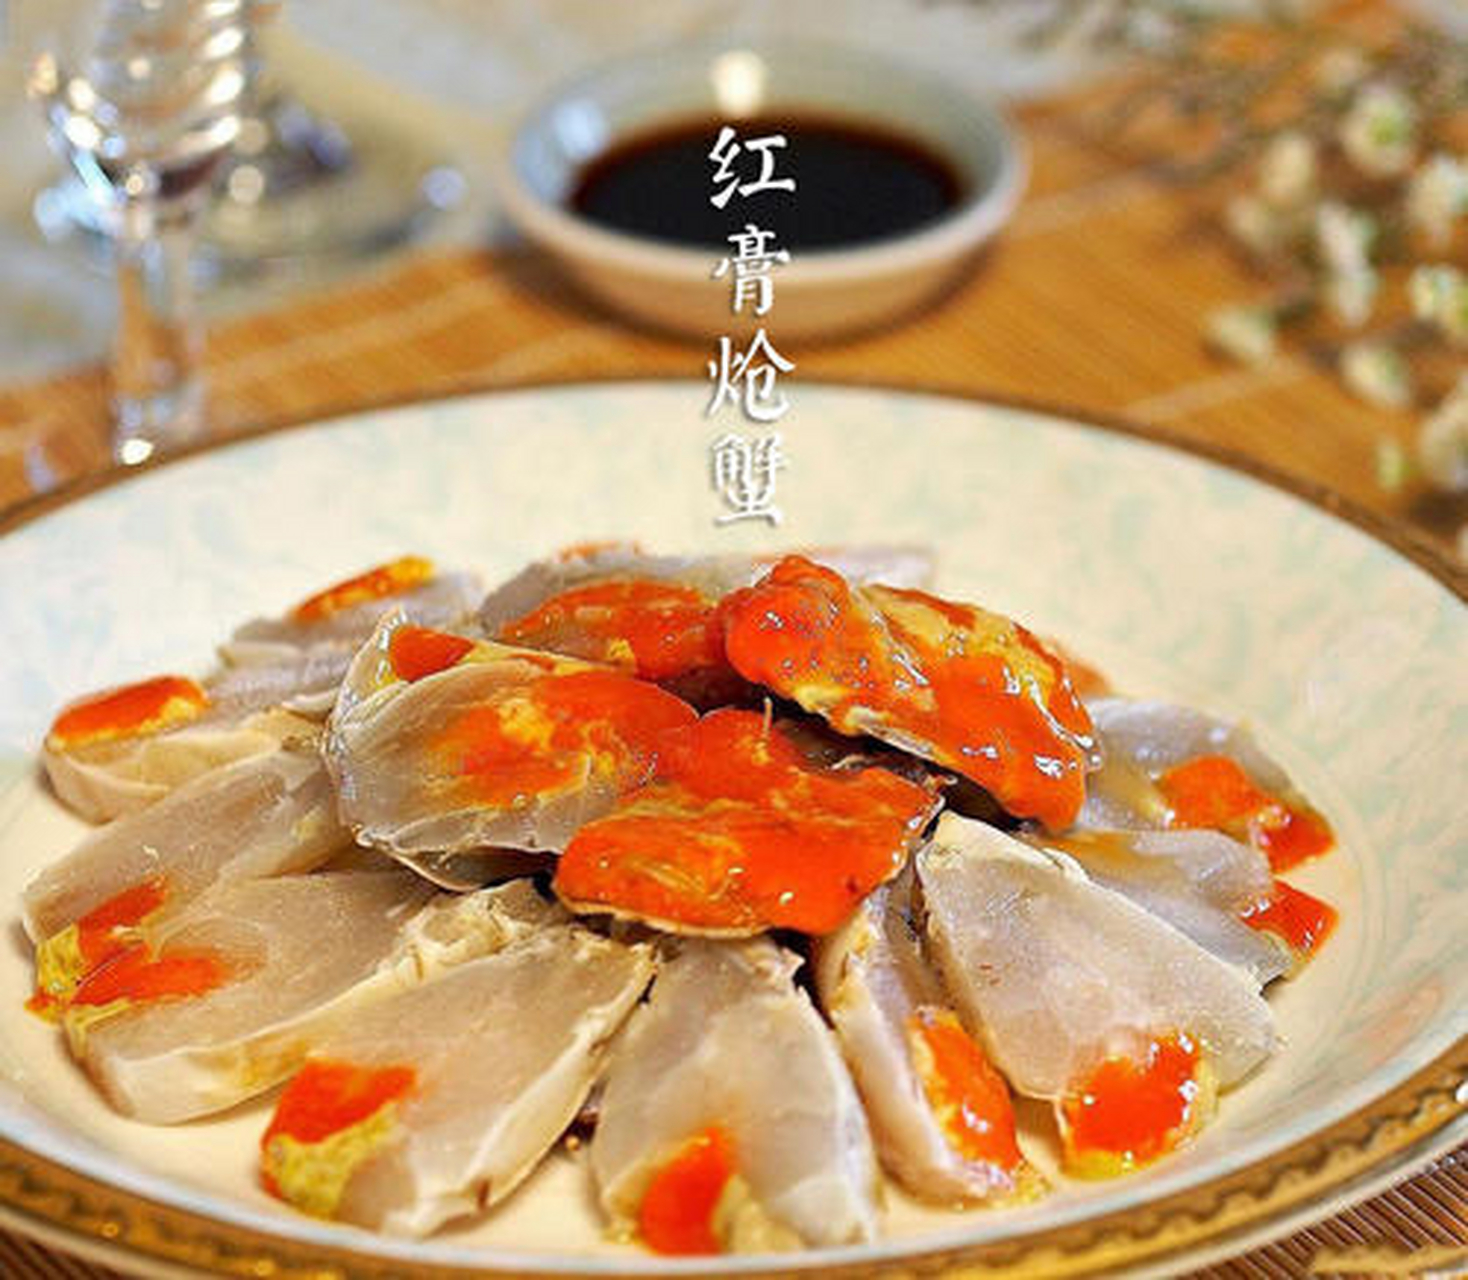 红膏炝蟹,作为宁波人新年餐桌上的主角,被赋予了隆重,尊贵的意味